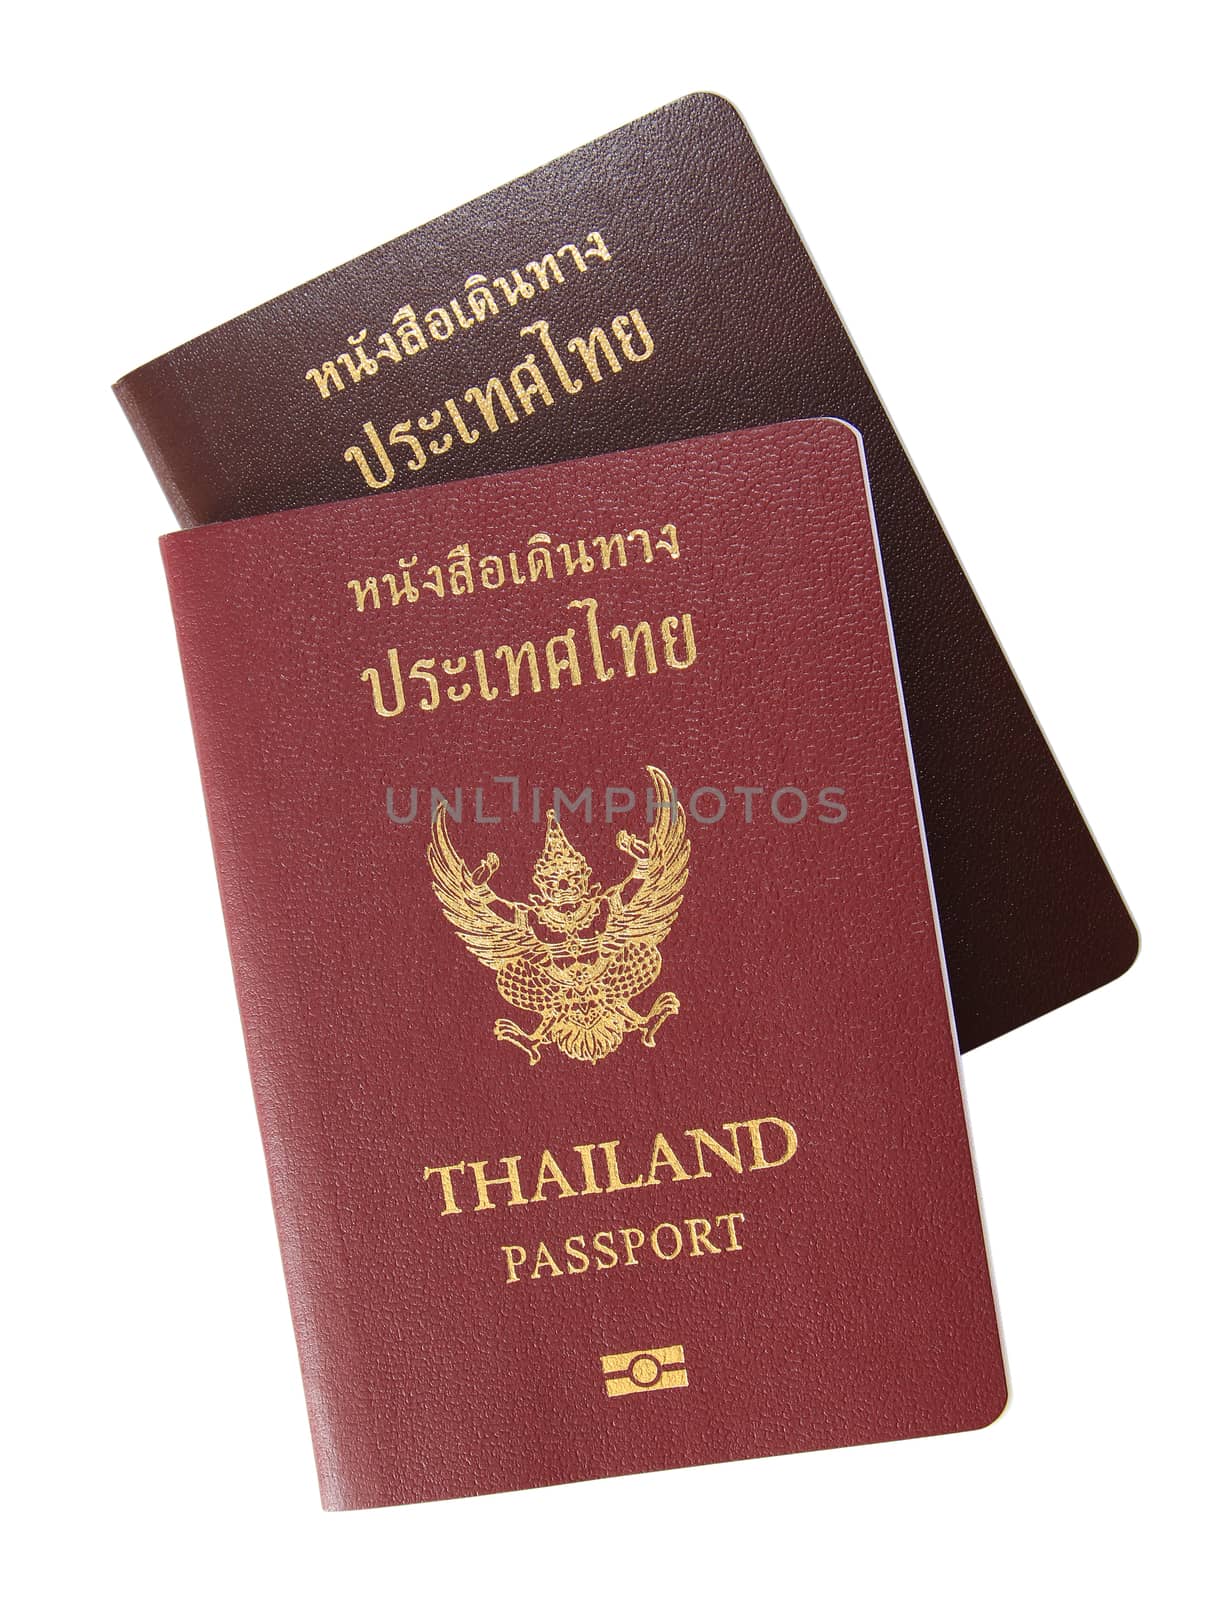 Thailand Passport by foto76